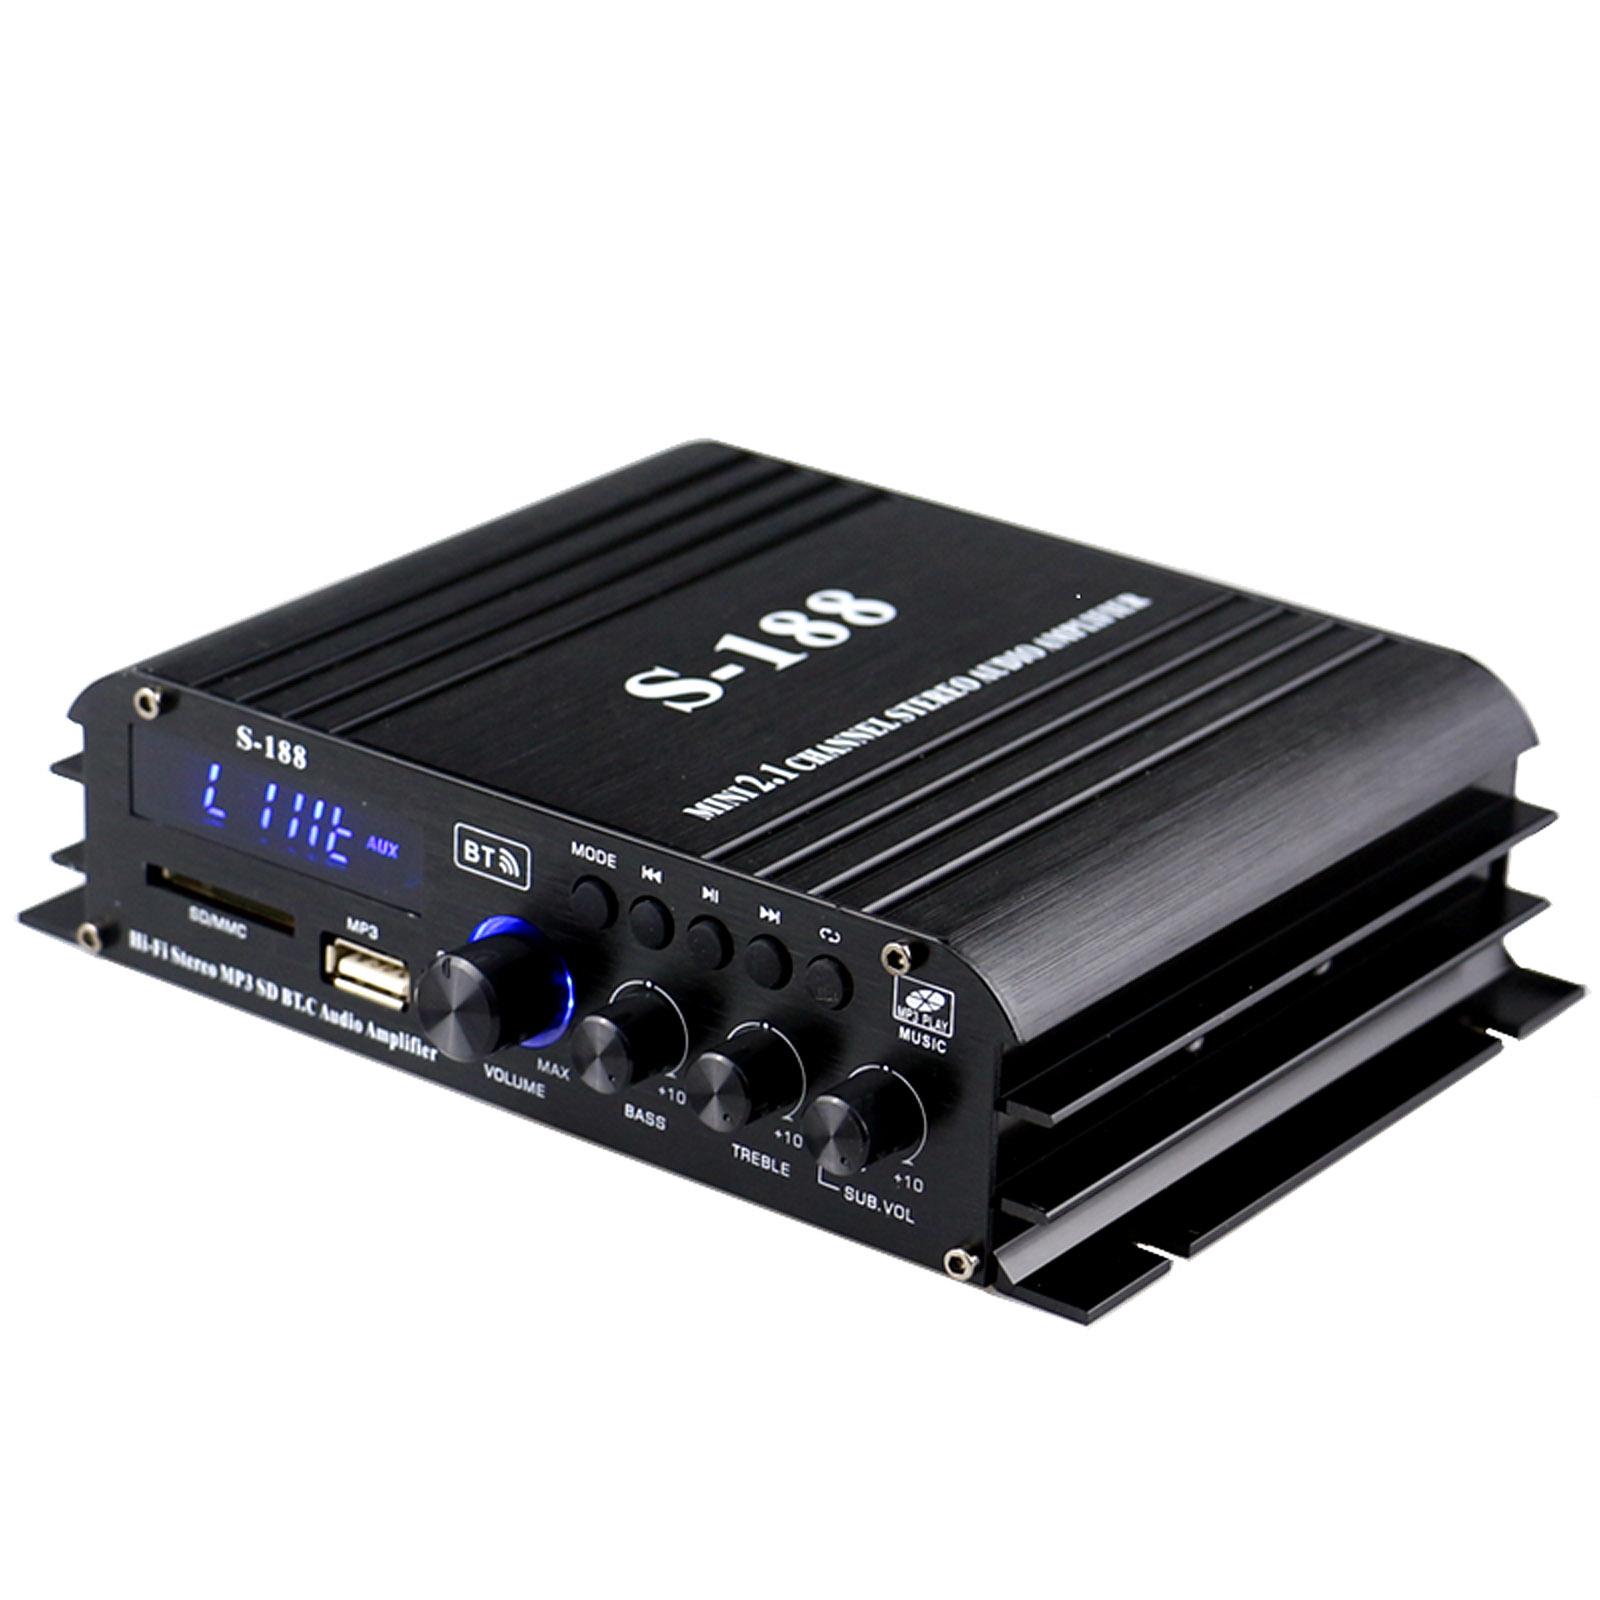 TOMTOP JMS S-188 Mini Audio Power Amplifier 2.1 Channel Digital BT Amplifier 40W*2+68W USB Memory Card Slot